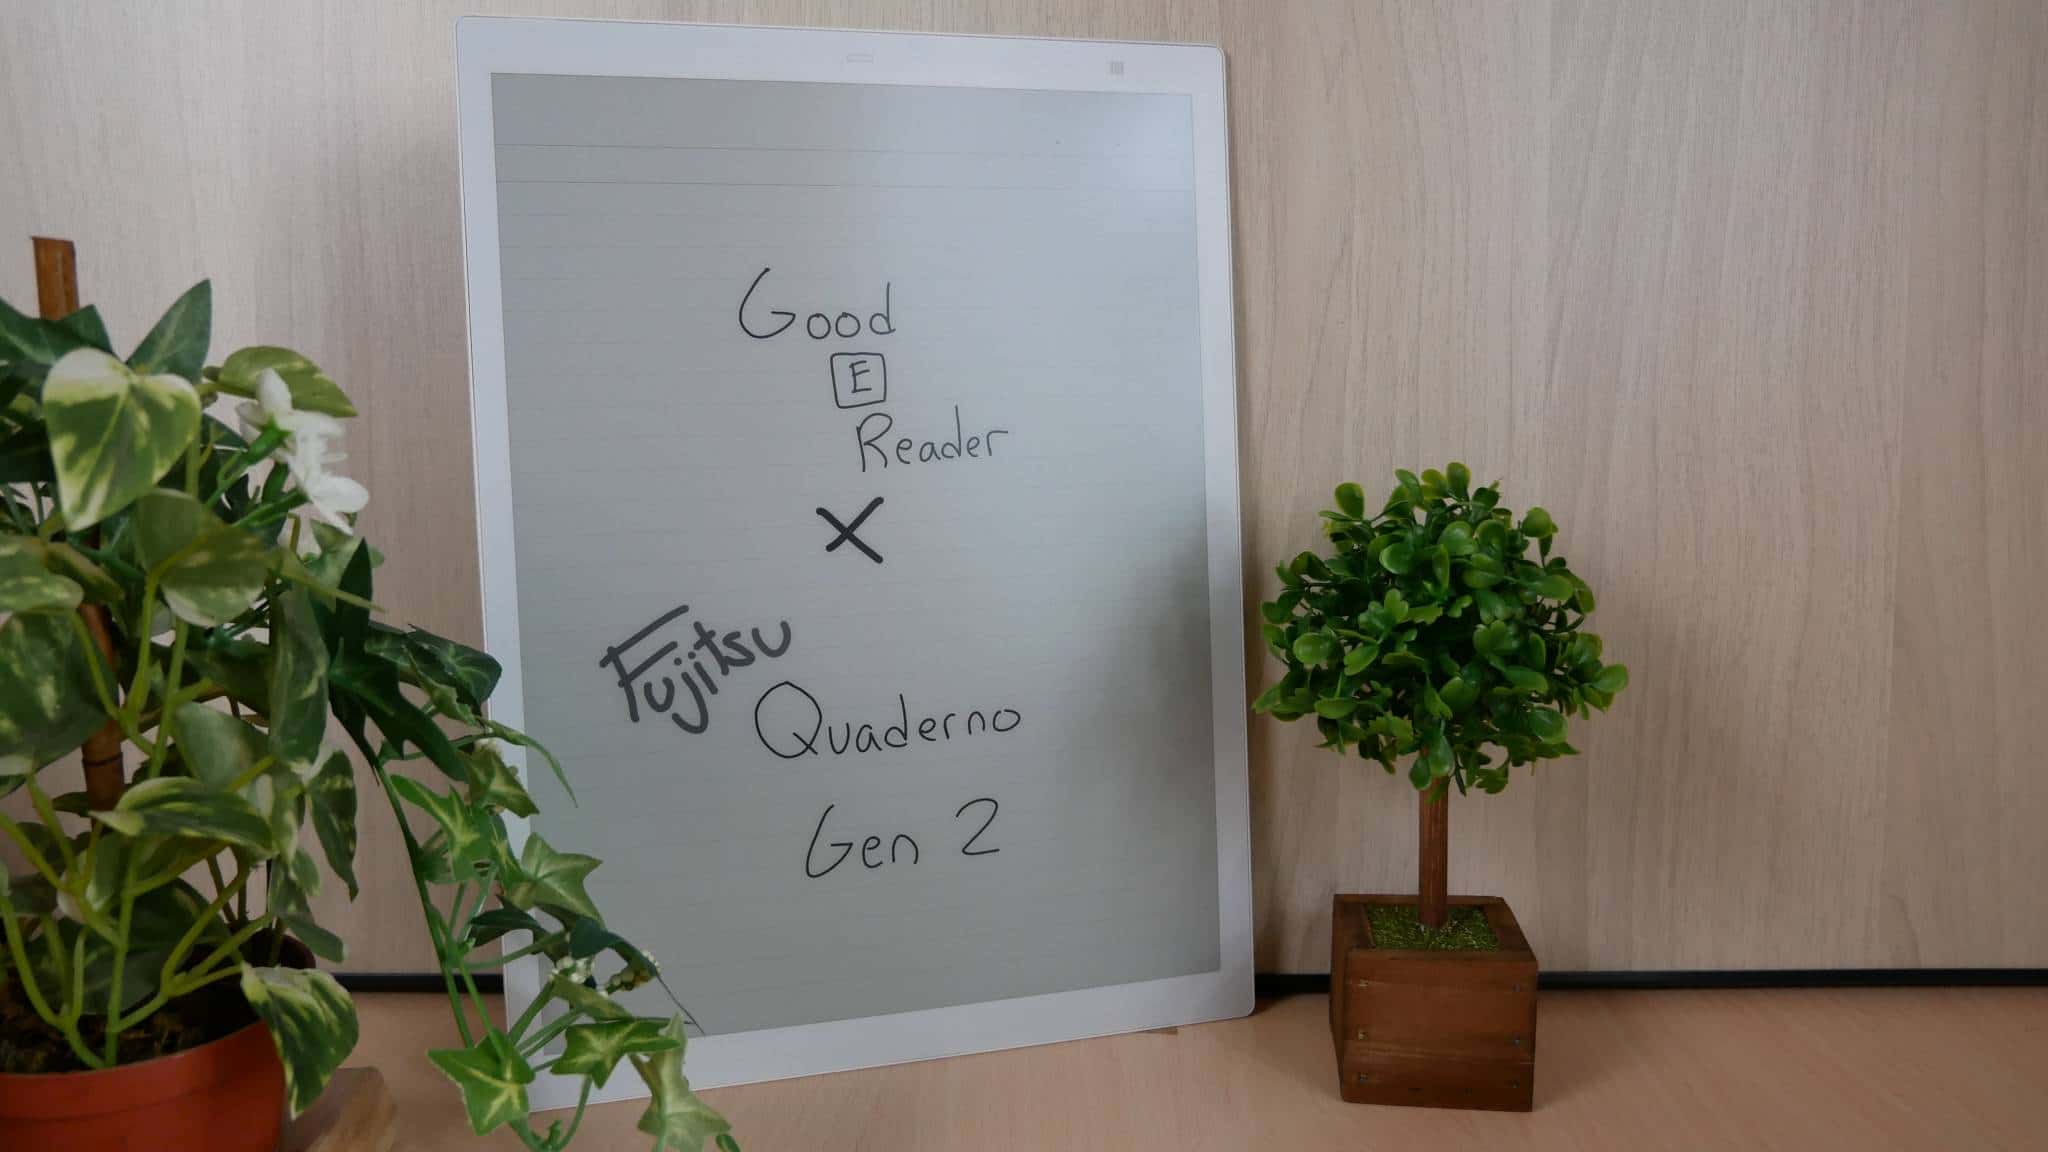 Fujitsu Quaderno A4 2nd Gen Review - Good e-Reader